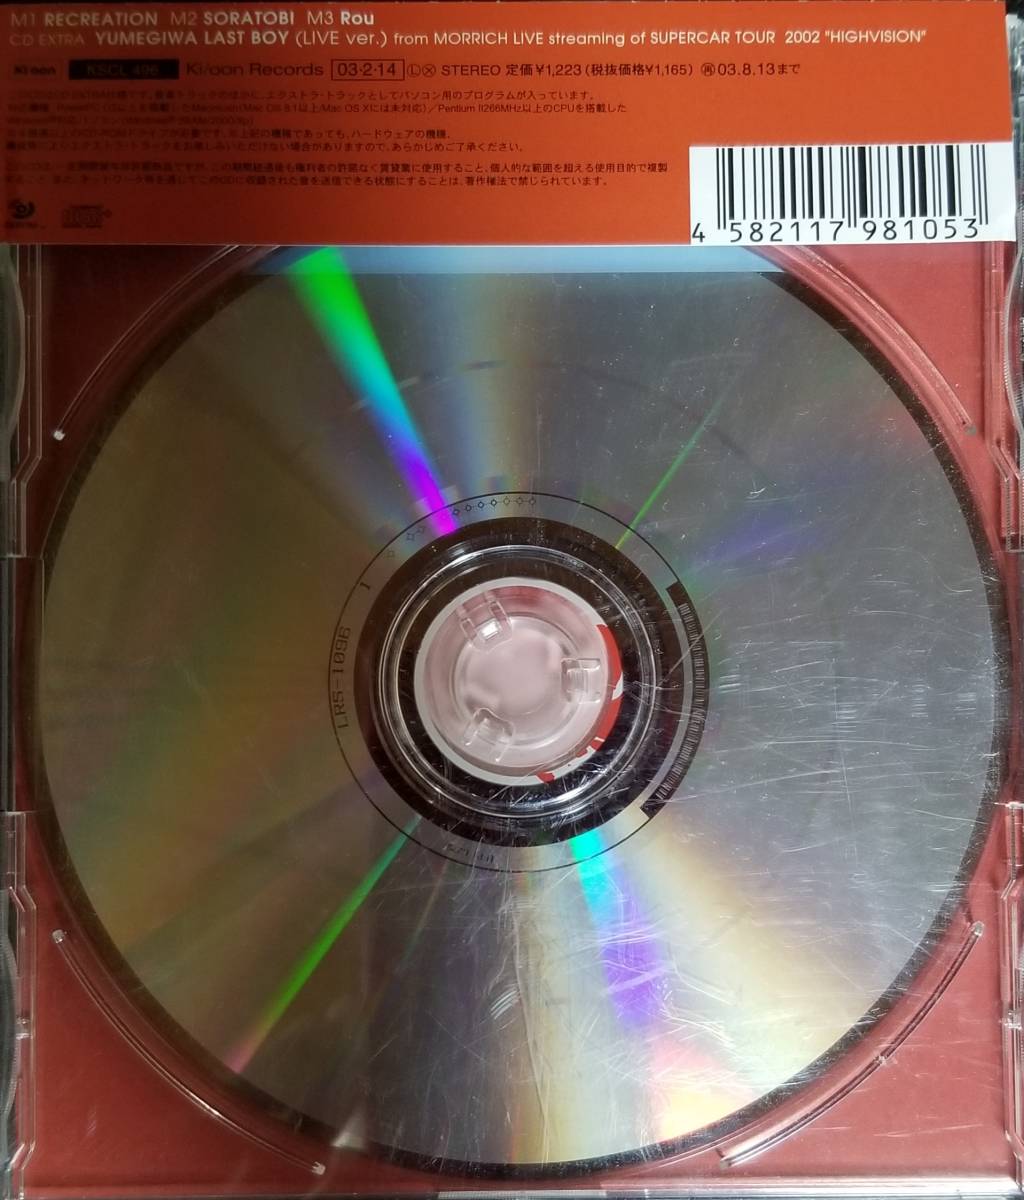 M1 ценный с поясом оби / бесплатная доставка # суперкар (SUPERCAR)[RECREATION(liklieishon)]CD